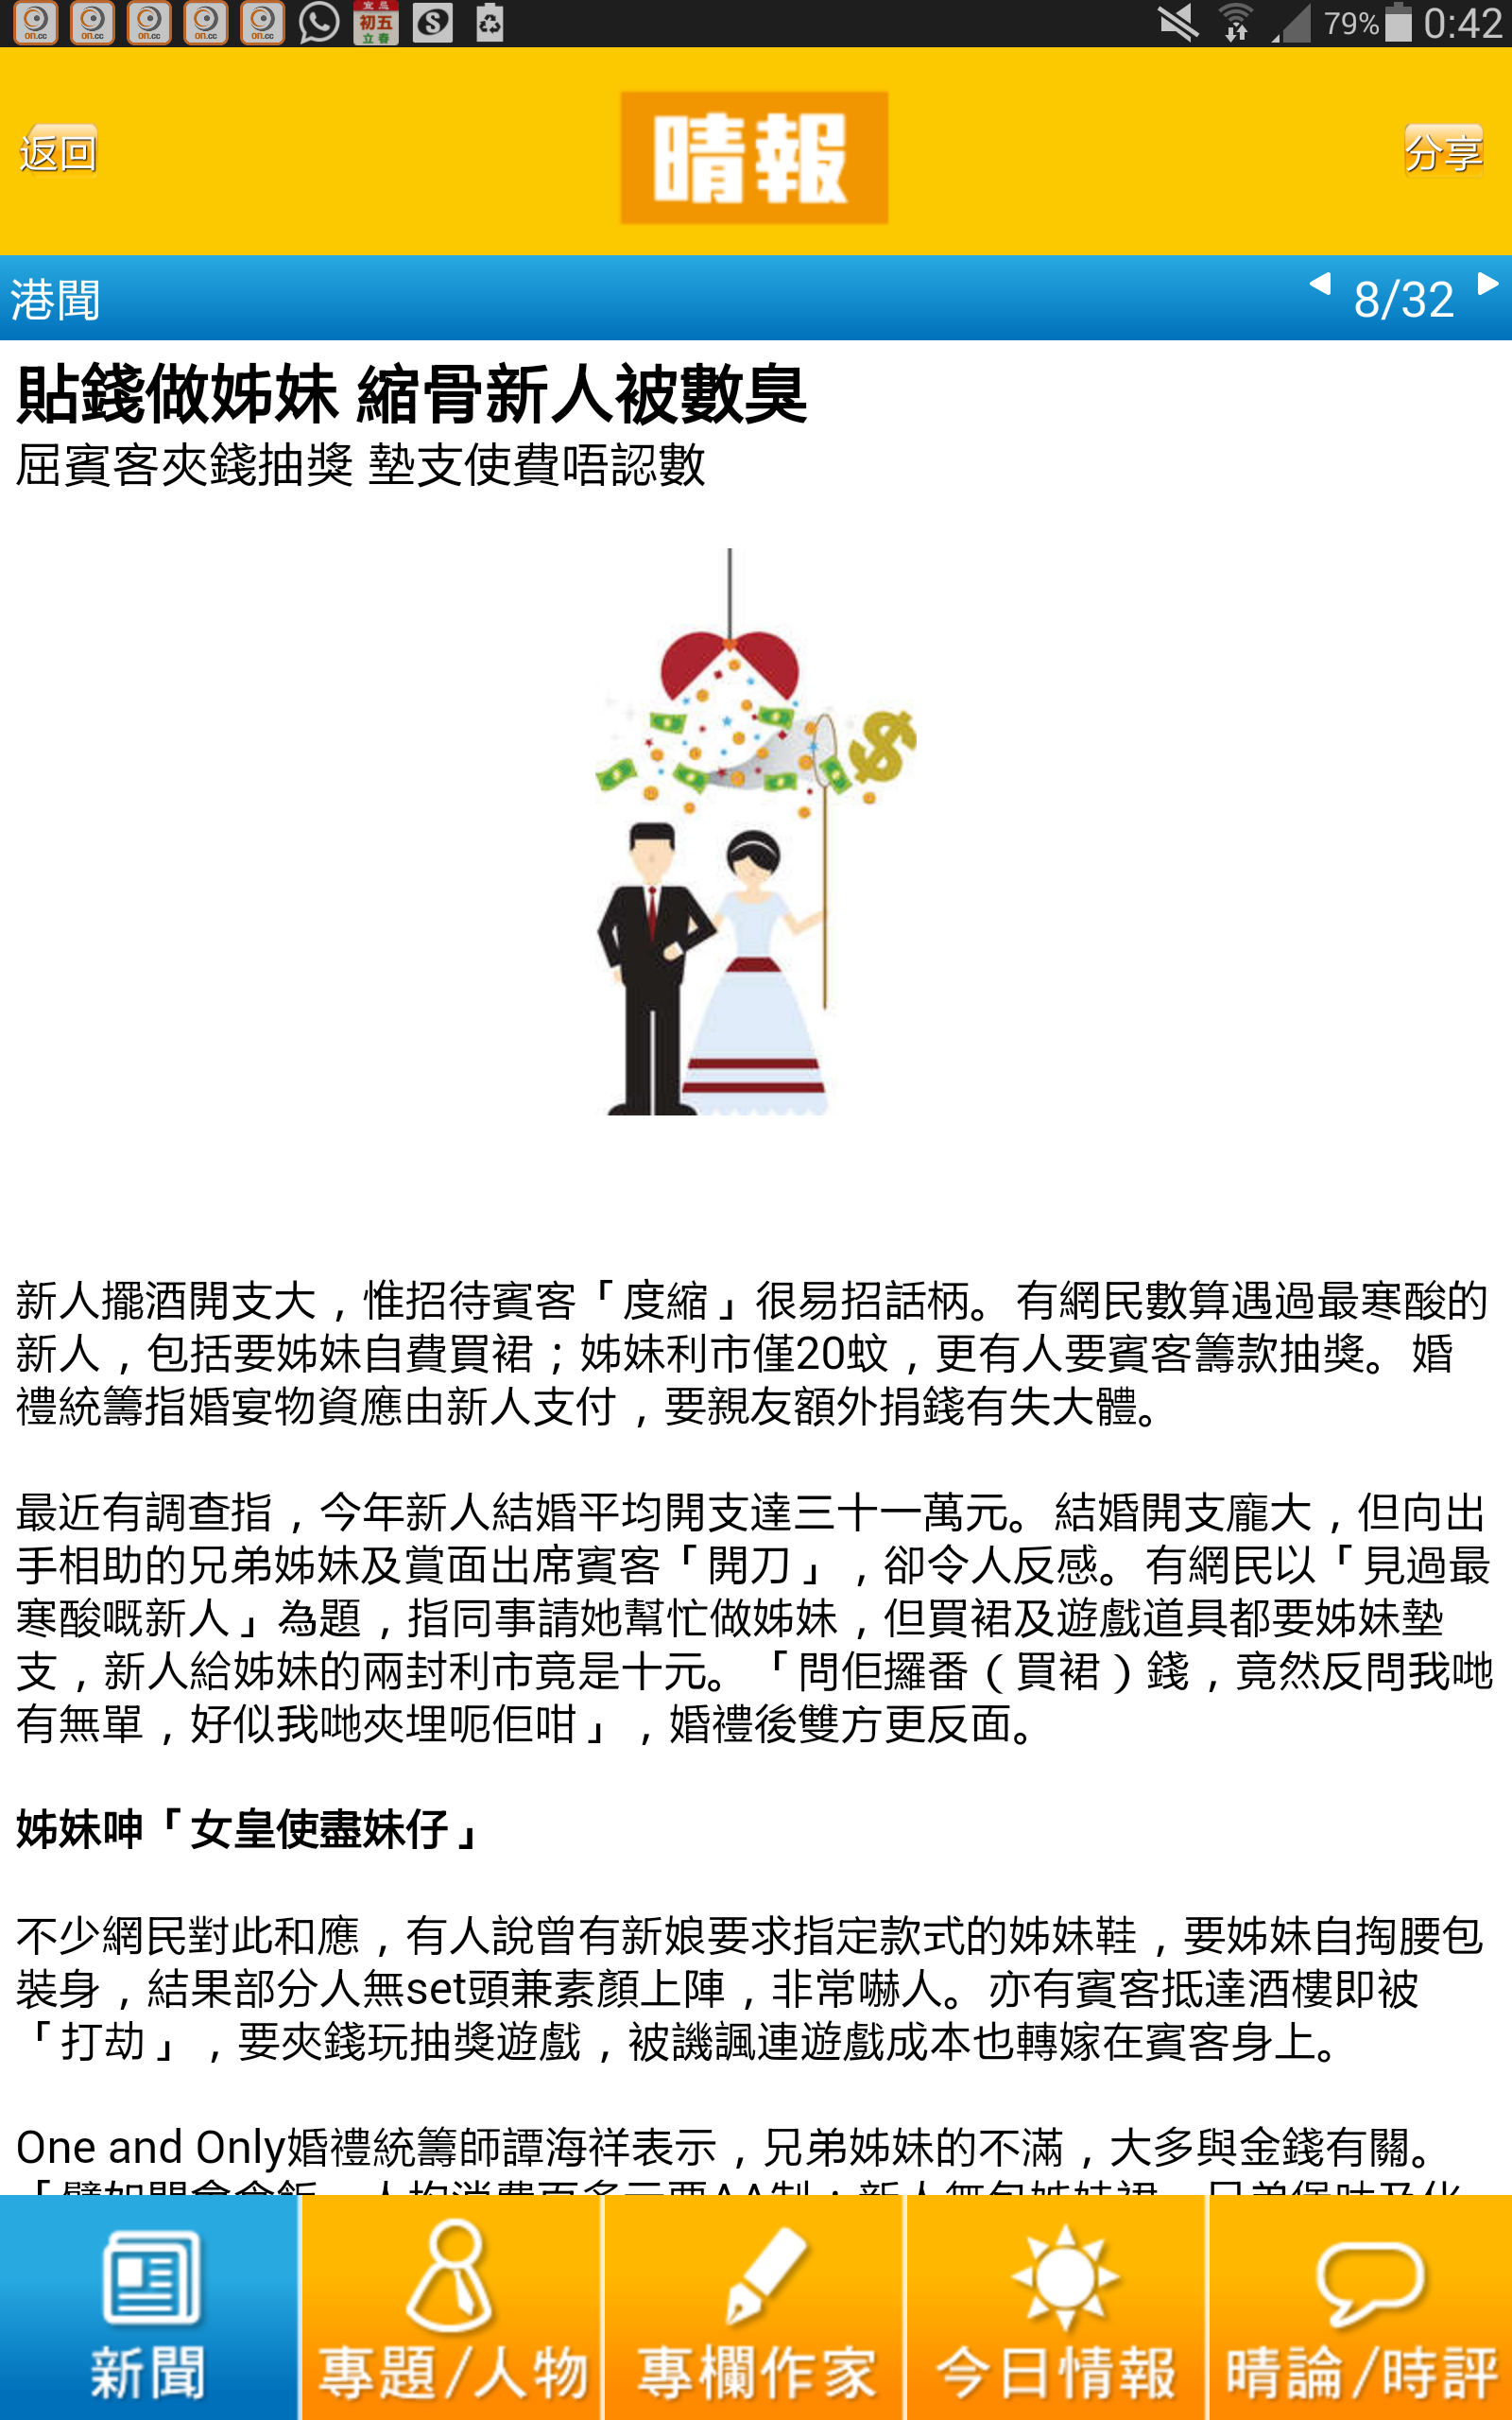 譚海祥Billy Tam 婚禮統籌師傳媒報導: 貼錢做姊妹 縮骨新人被數臭